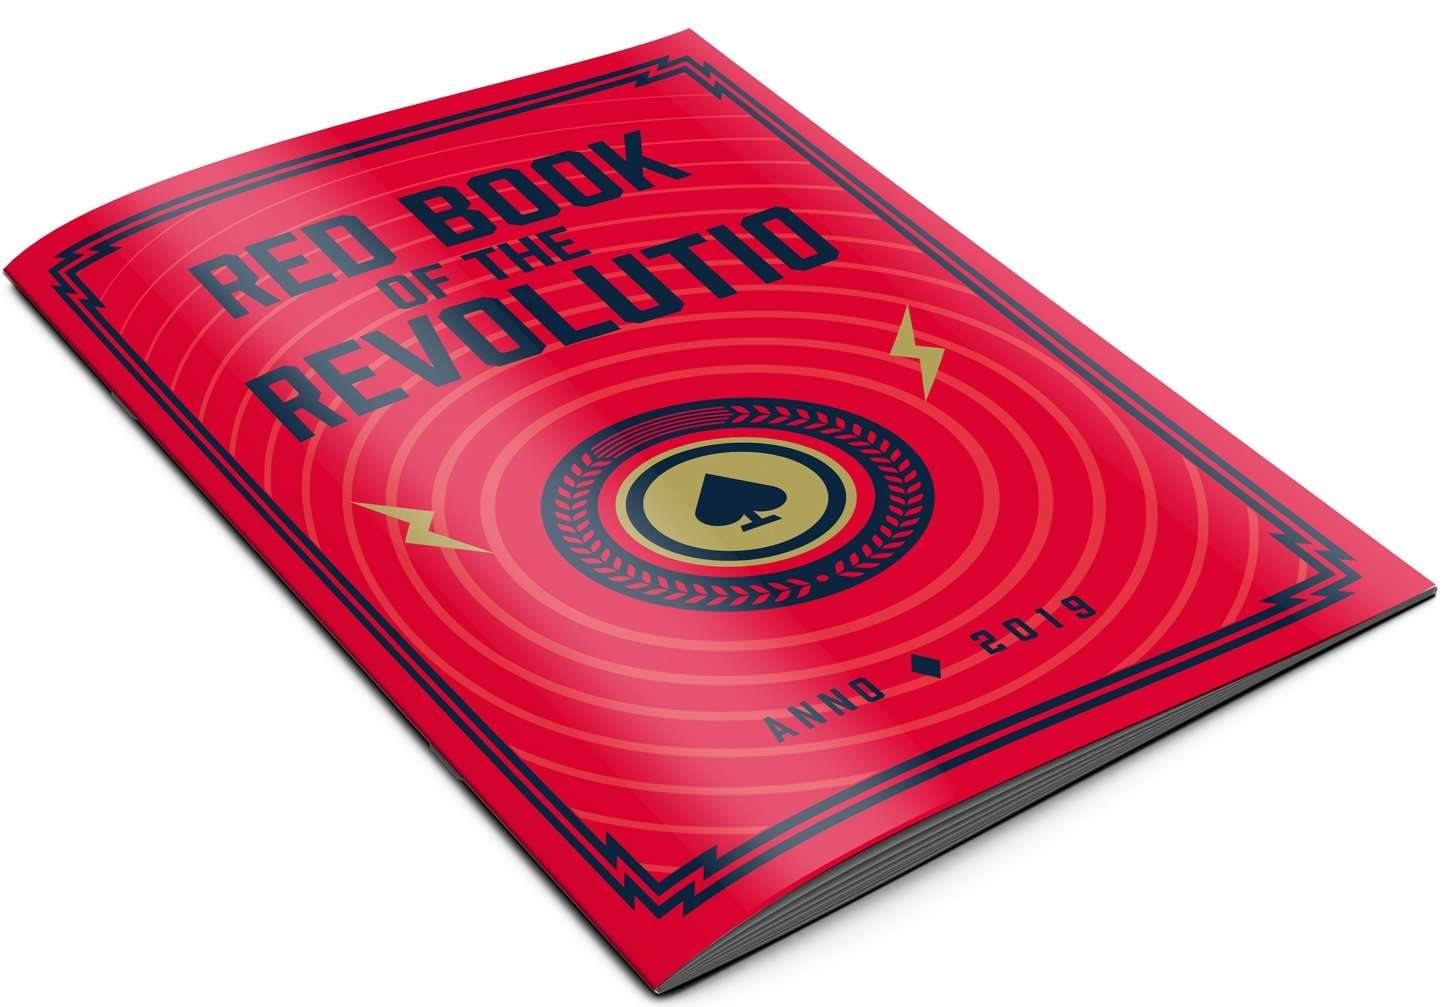 PlayingCardDecks.com-Red Book of the Revolutio